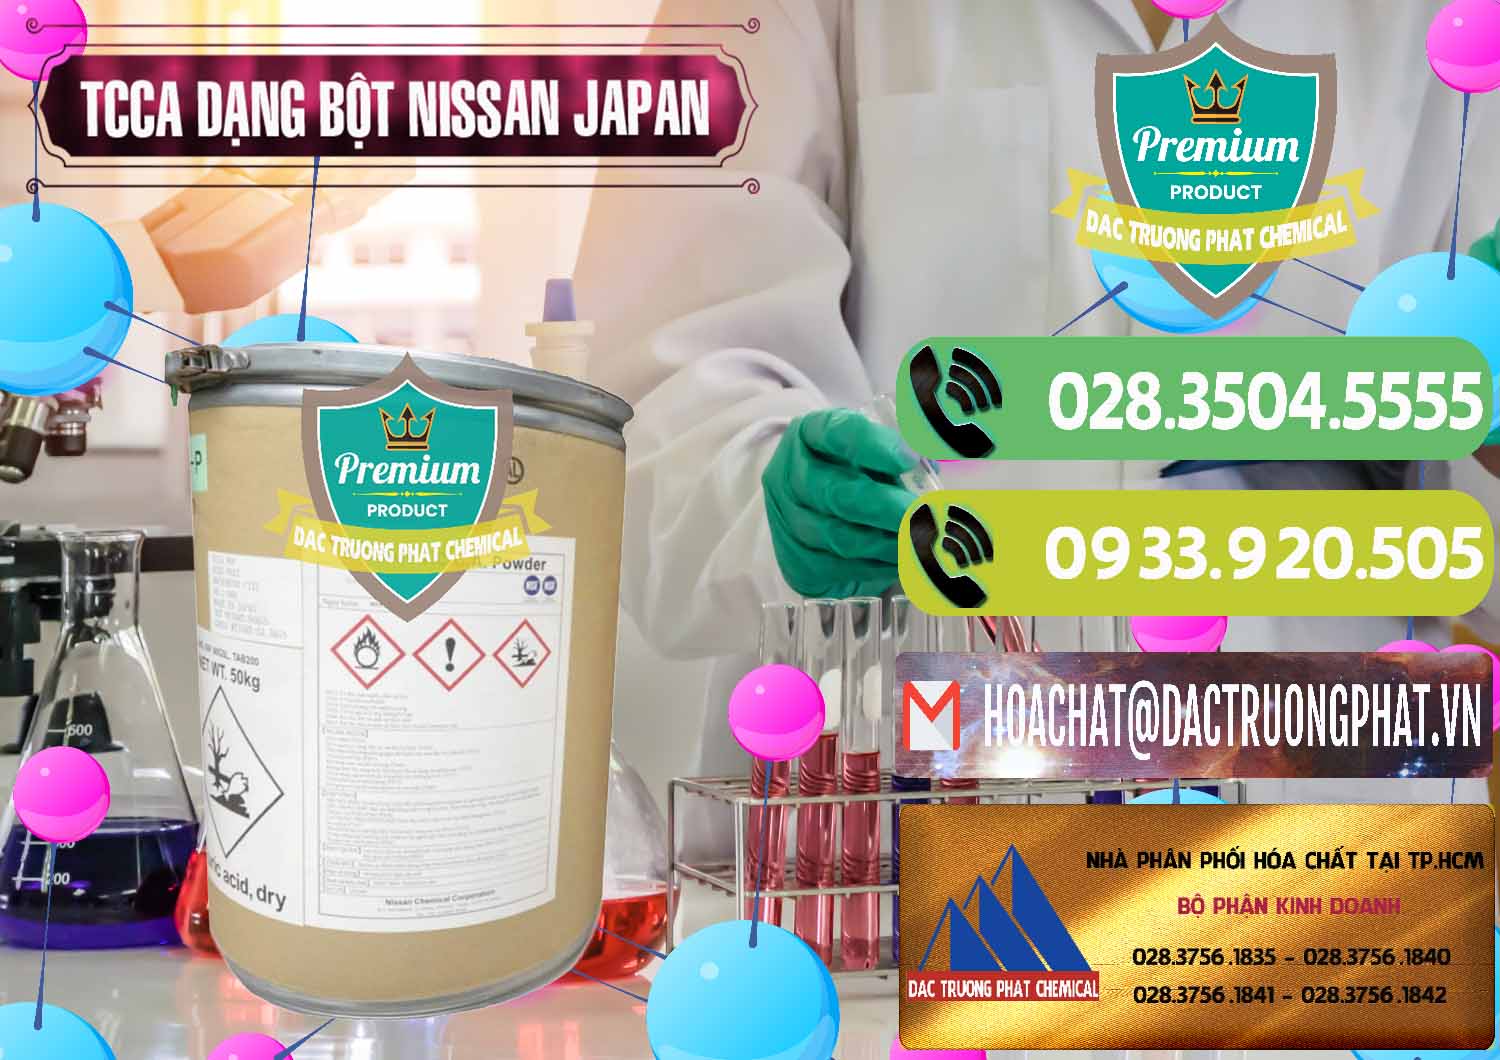 Nhà phân phối _ bán TCCA - Acid Trichloroisocyanuric 90% Dạng Bột Nissan Nhật Bản Japan - 0375 - Nơi phân phối ( nhập khẩu ) hóa chất tại TP.HCM - hoachatmientay.vn